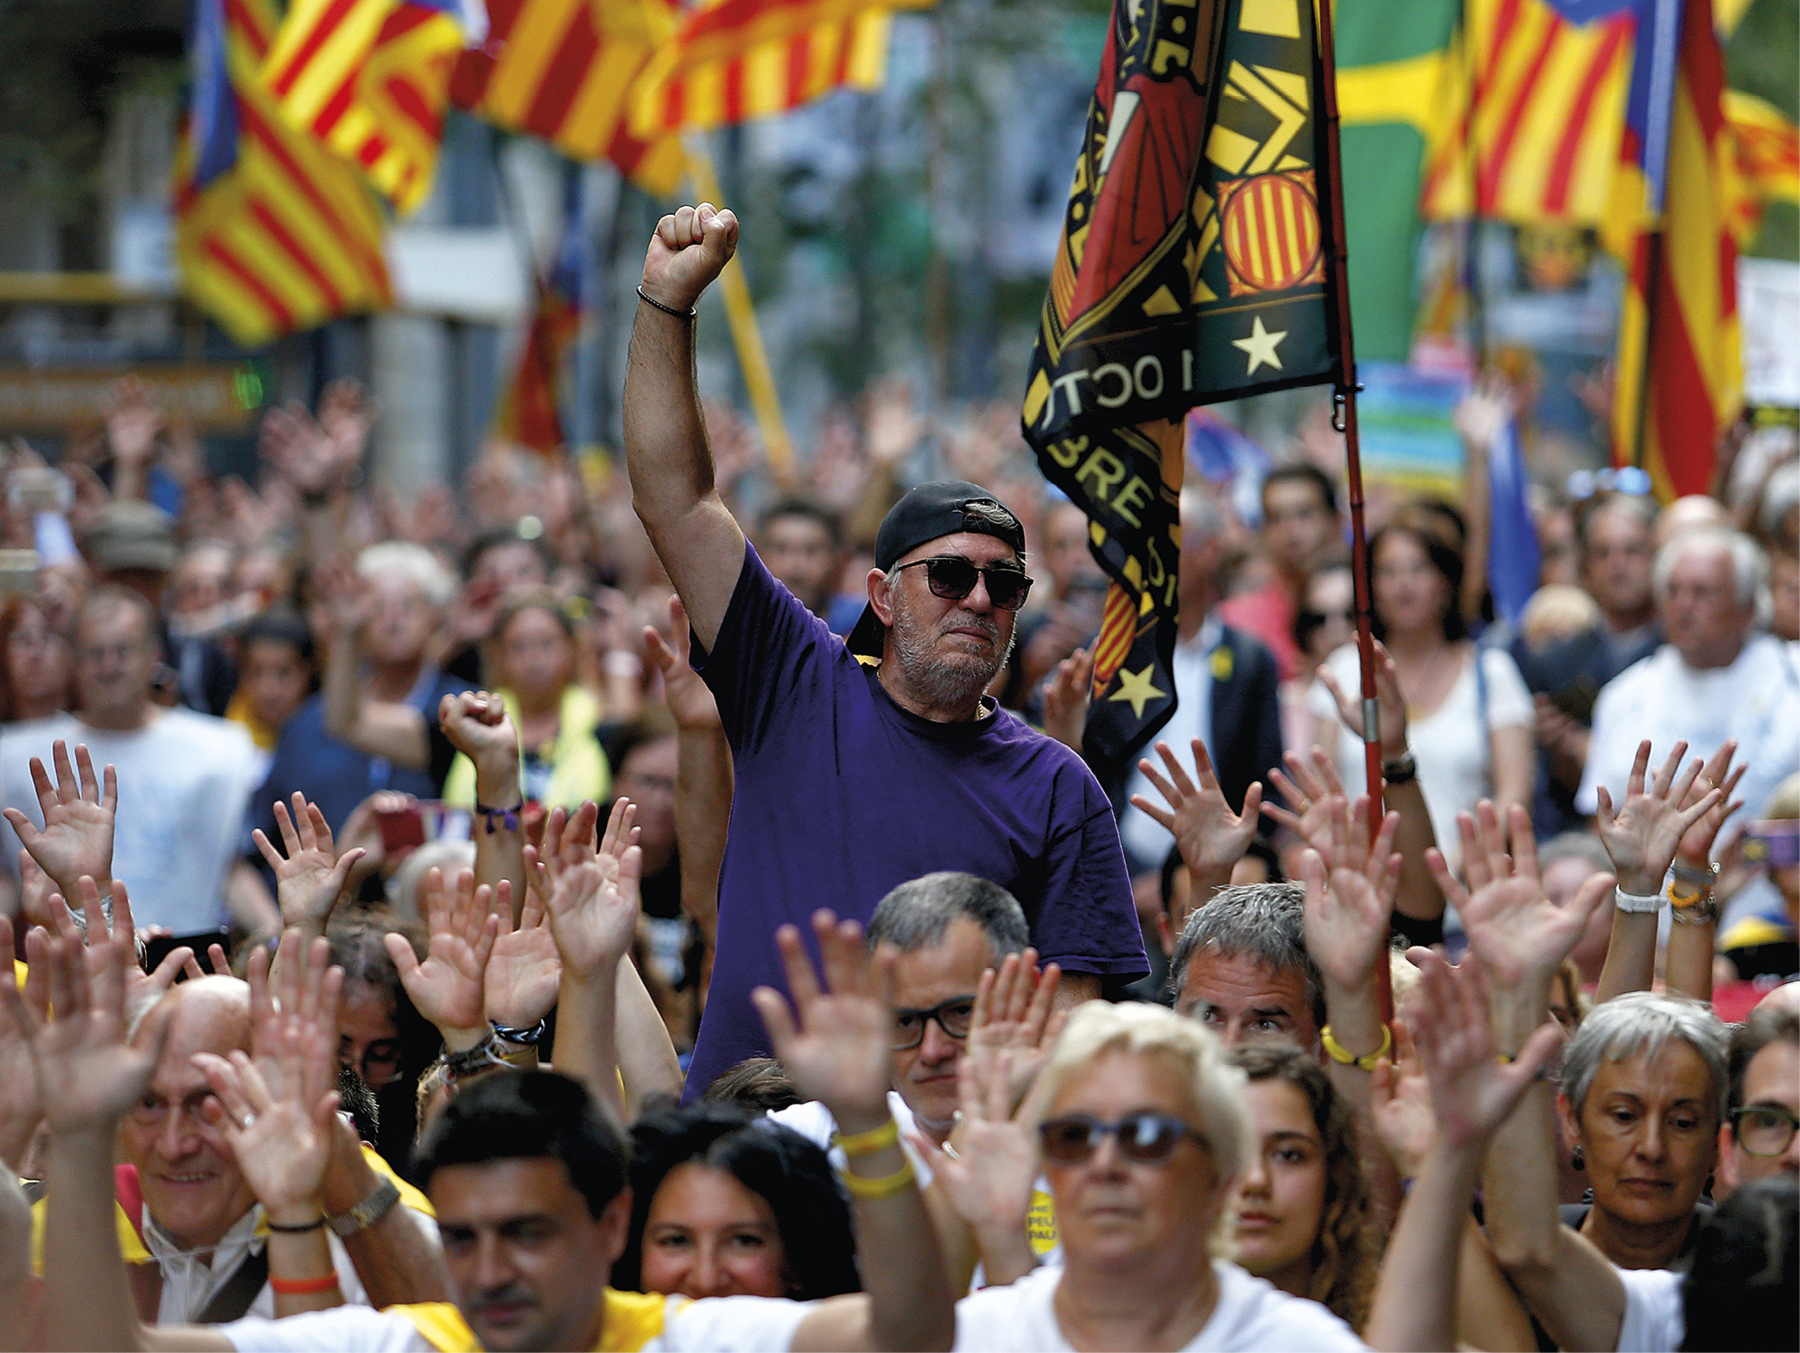 Fotografia. Multidão de pessoas andando com as mãos levantadas; no centro, destaque para um homem usando óculos escuros, boné, com a mão direita fechada e  levantada; atrás dele há diversas bandeiras com listras amarelas e vermelhas.